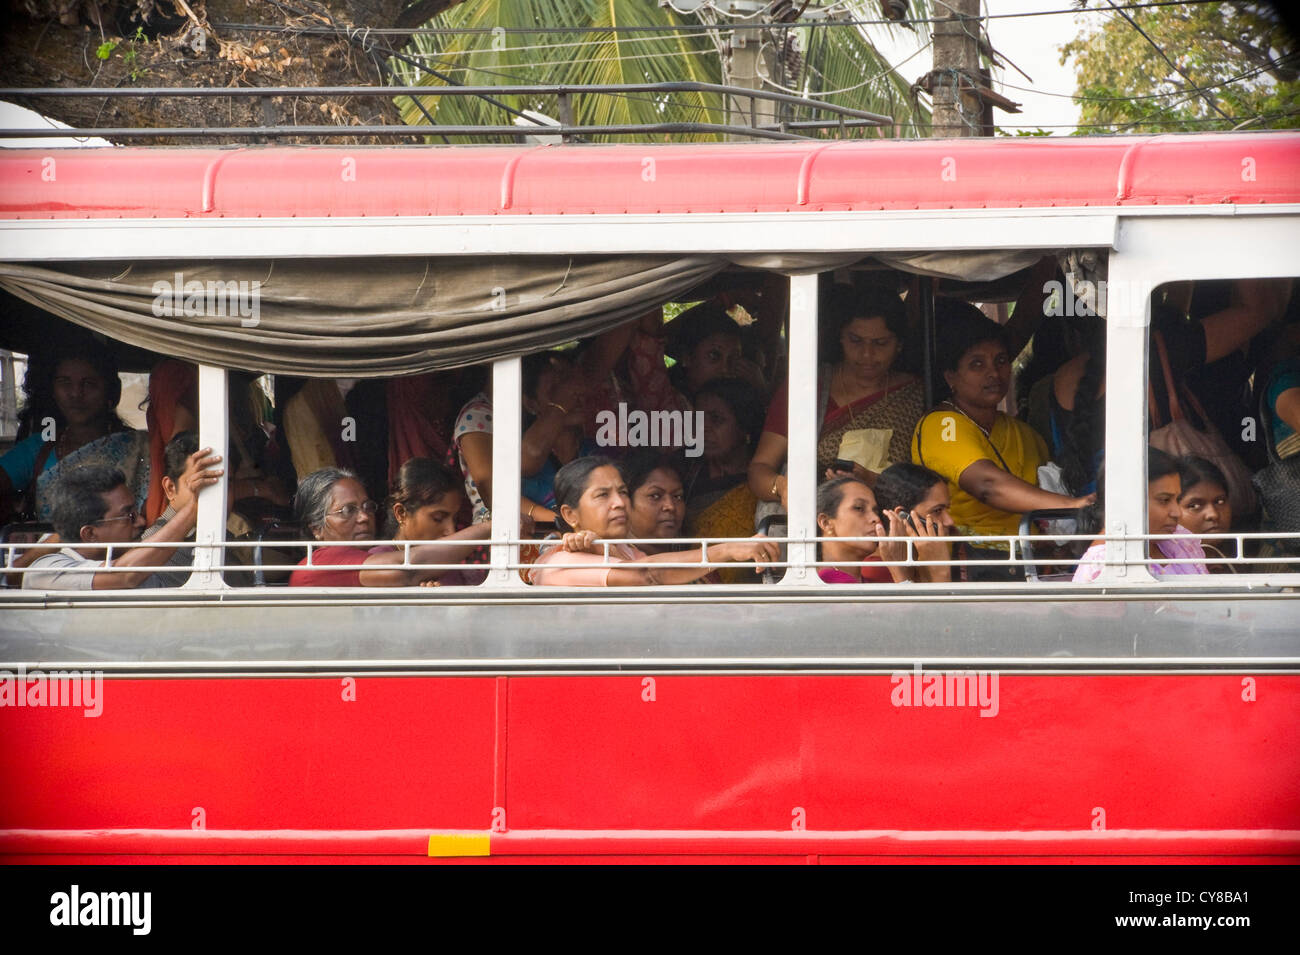 Horizontale Ansicht eines belebten lokalen Busses mit Passagieren vollgestopft während der Hauptverkehrszeit. Stockfoto